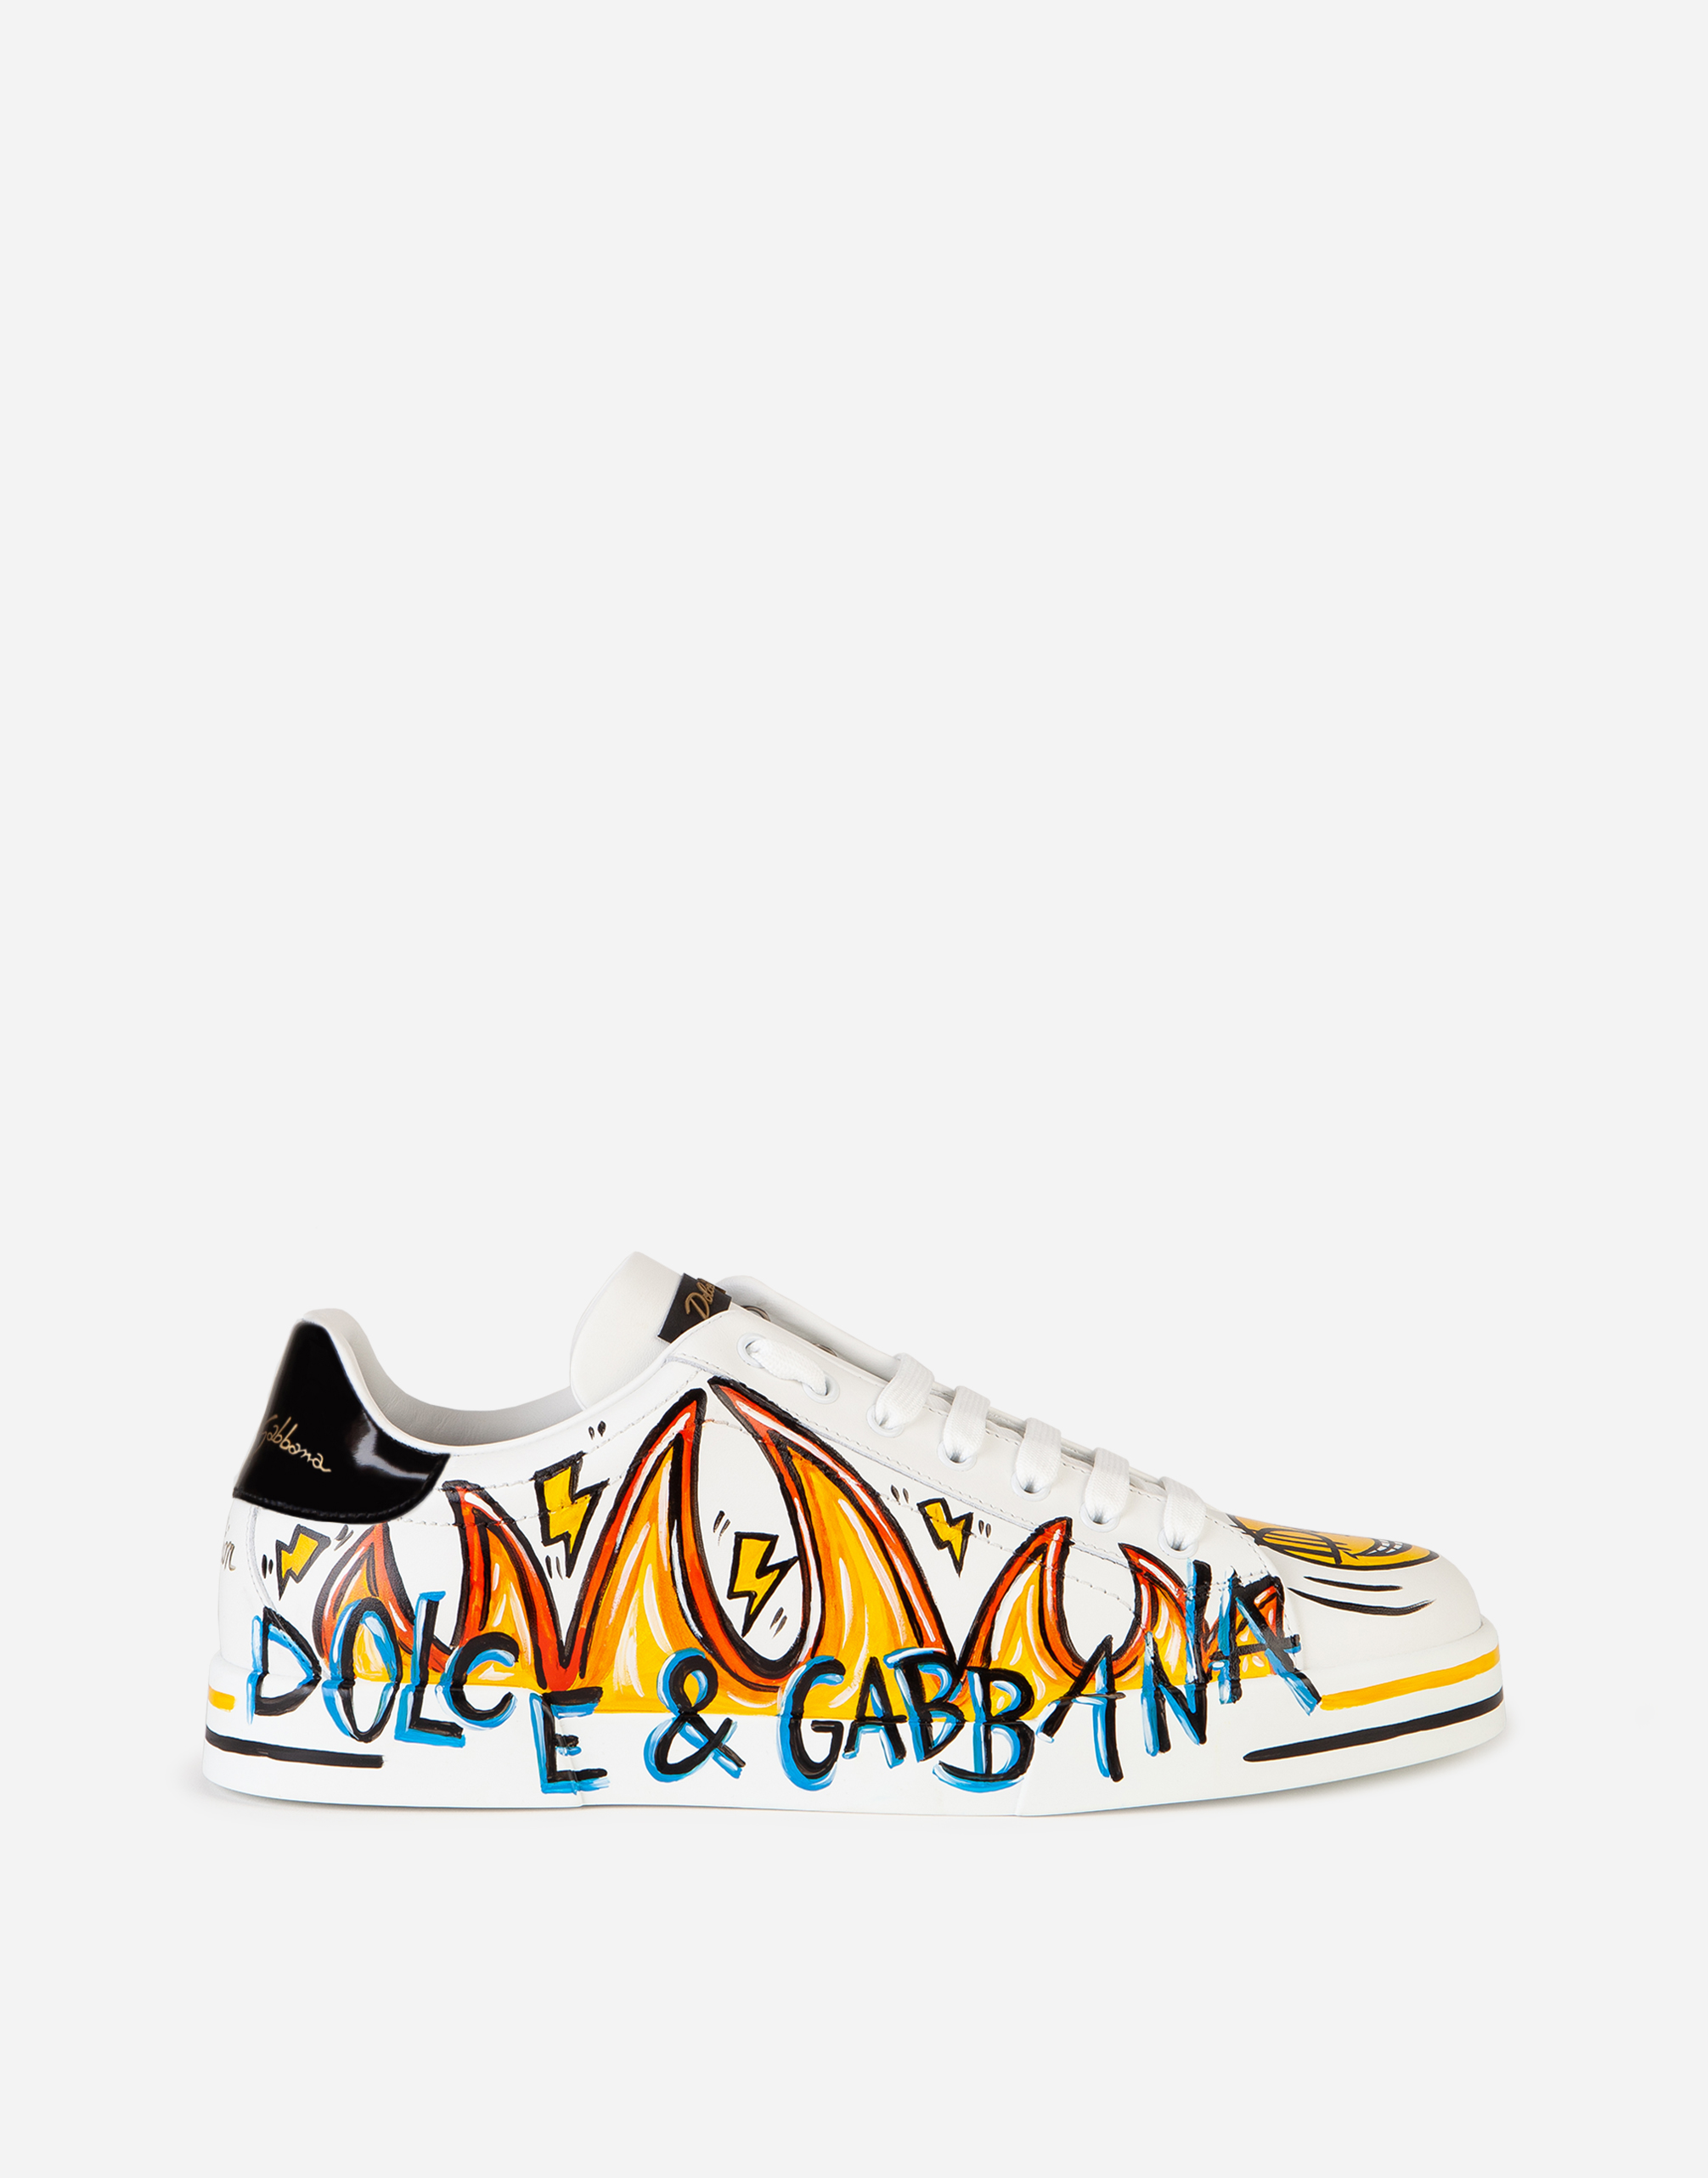 New DGLimited Portofino sneakers in WHITE